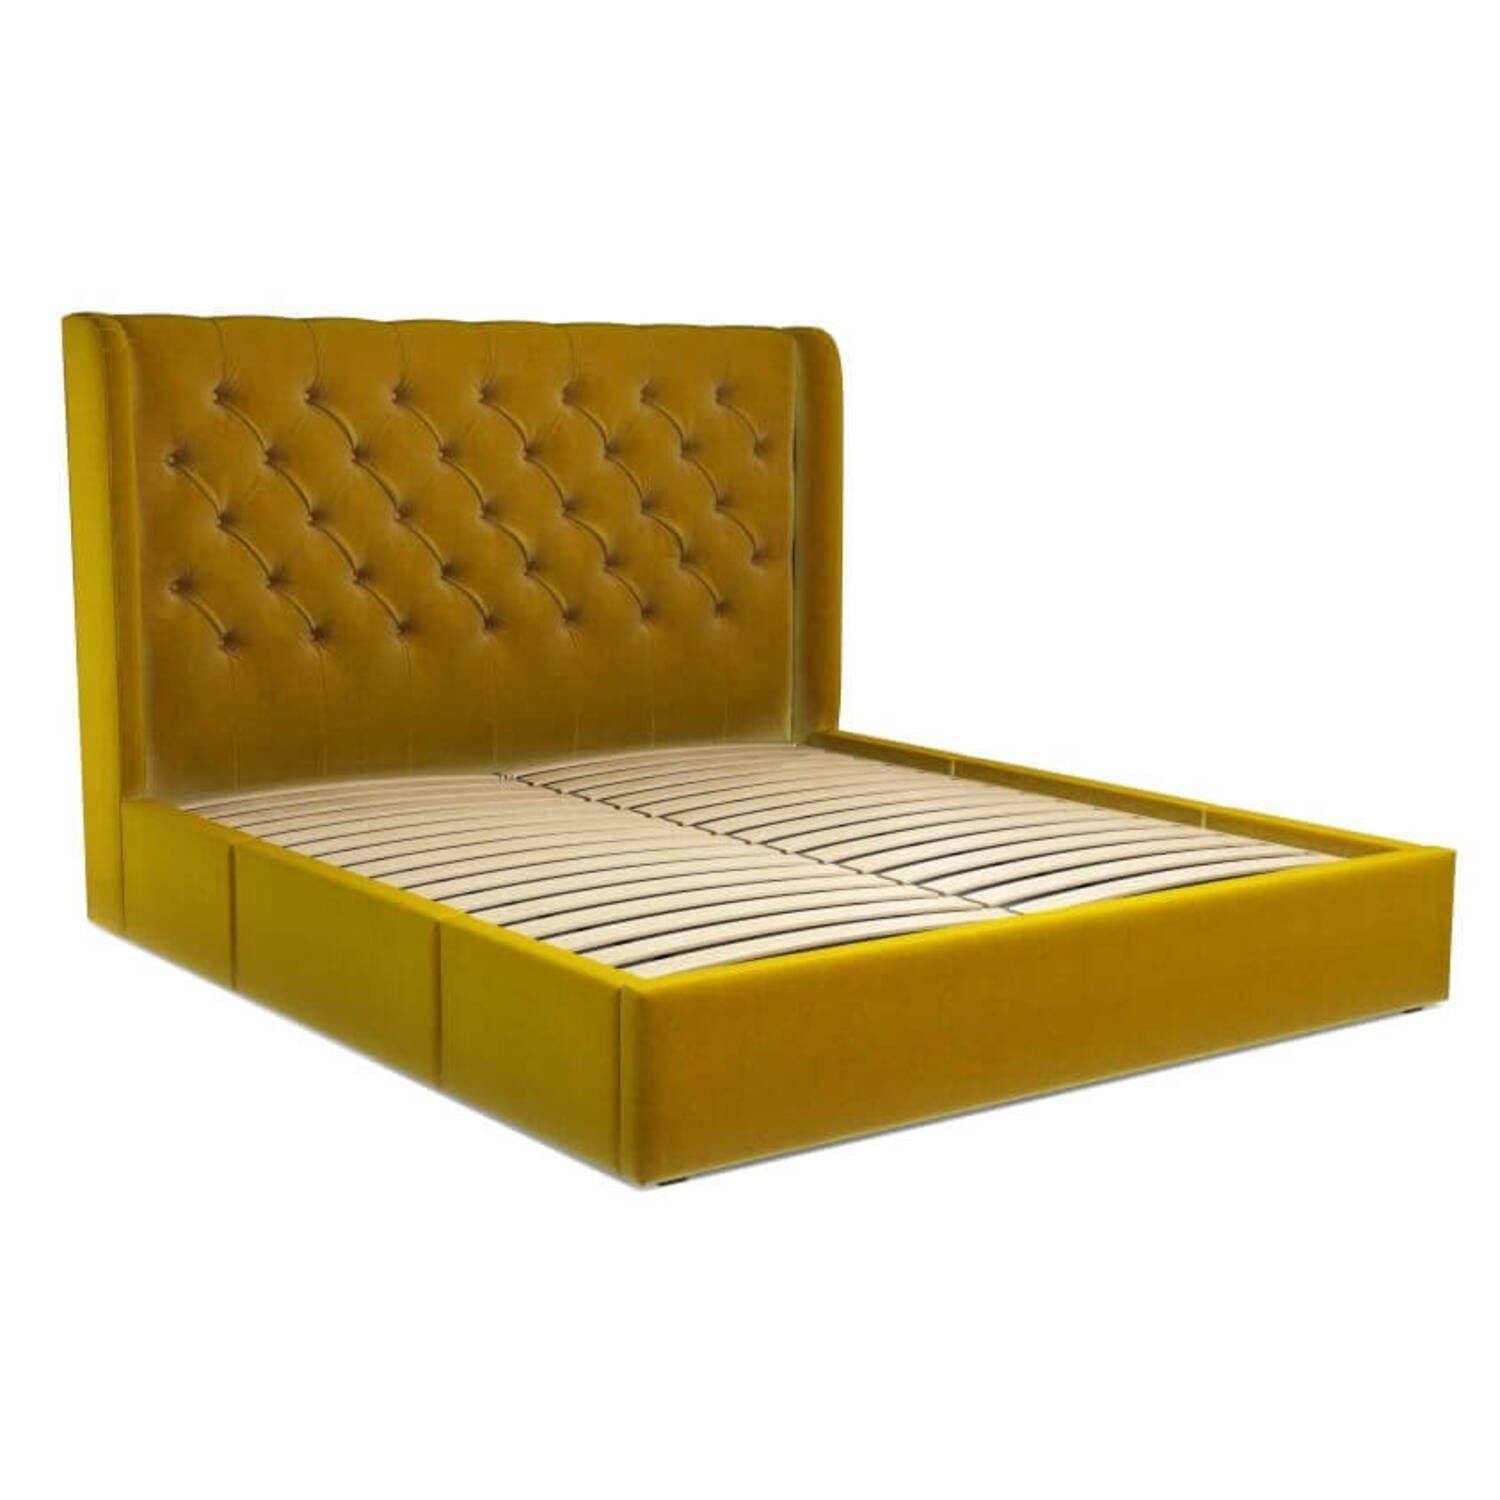 Кровать Romero с ящиками для хранения, желтая